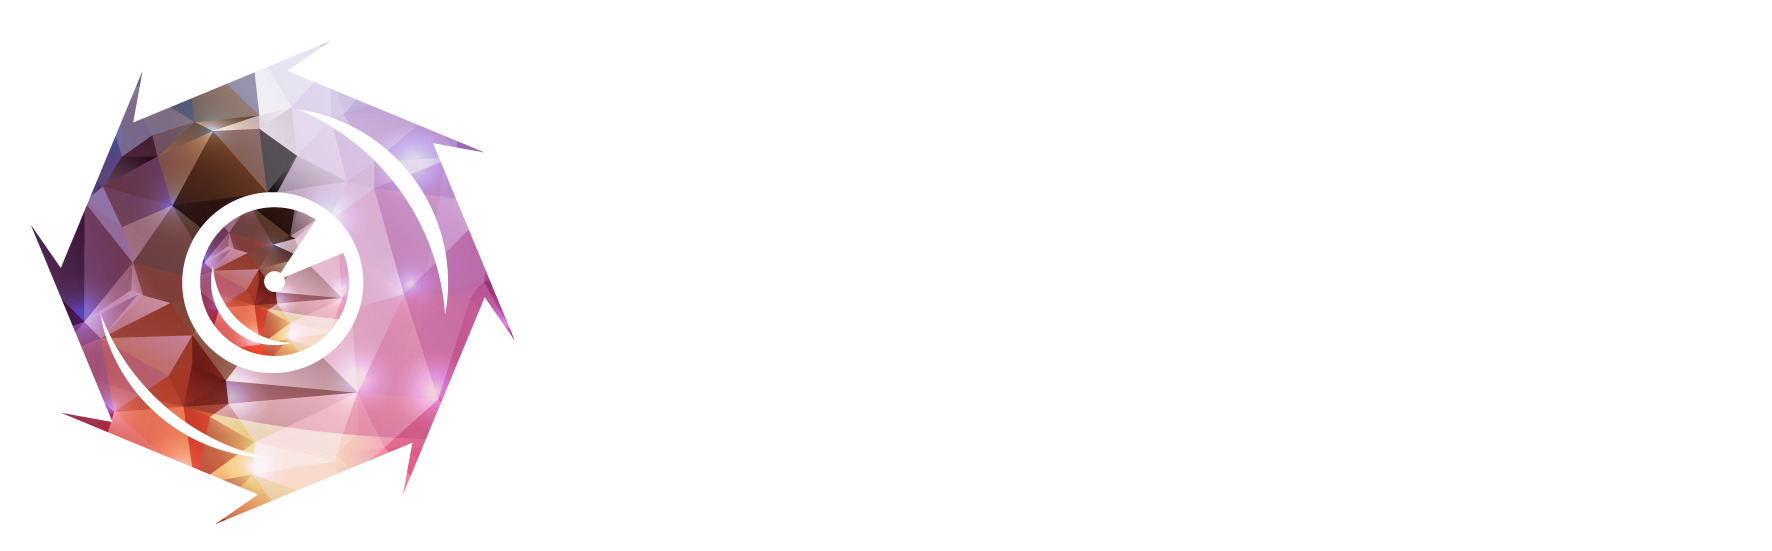 香港攝影師網 Hong Kong Photographer - 全自動攝影師O2O平台